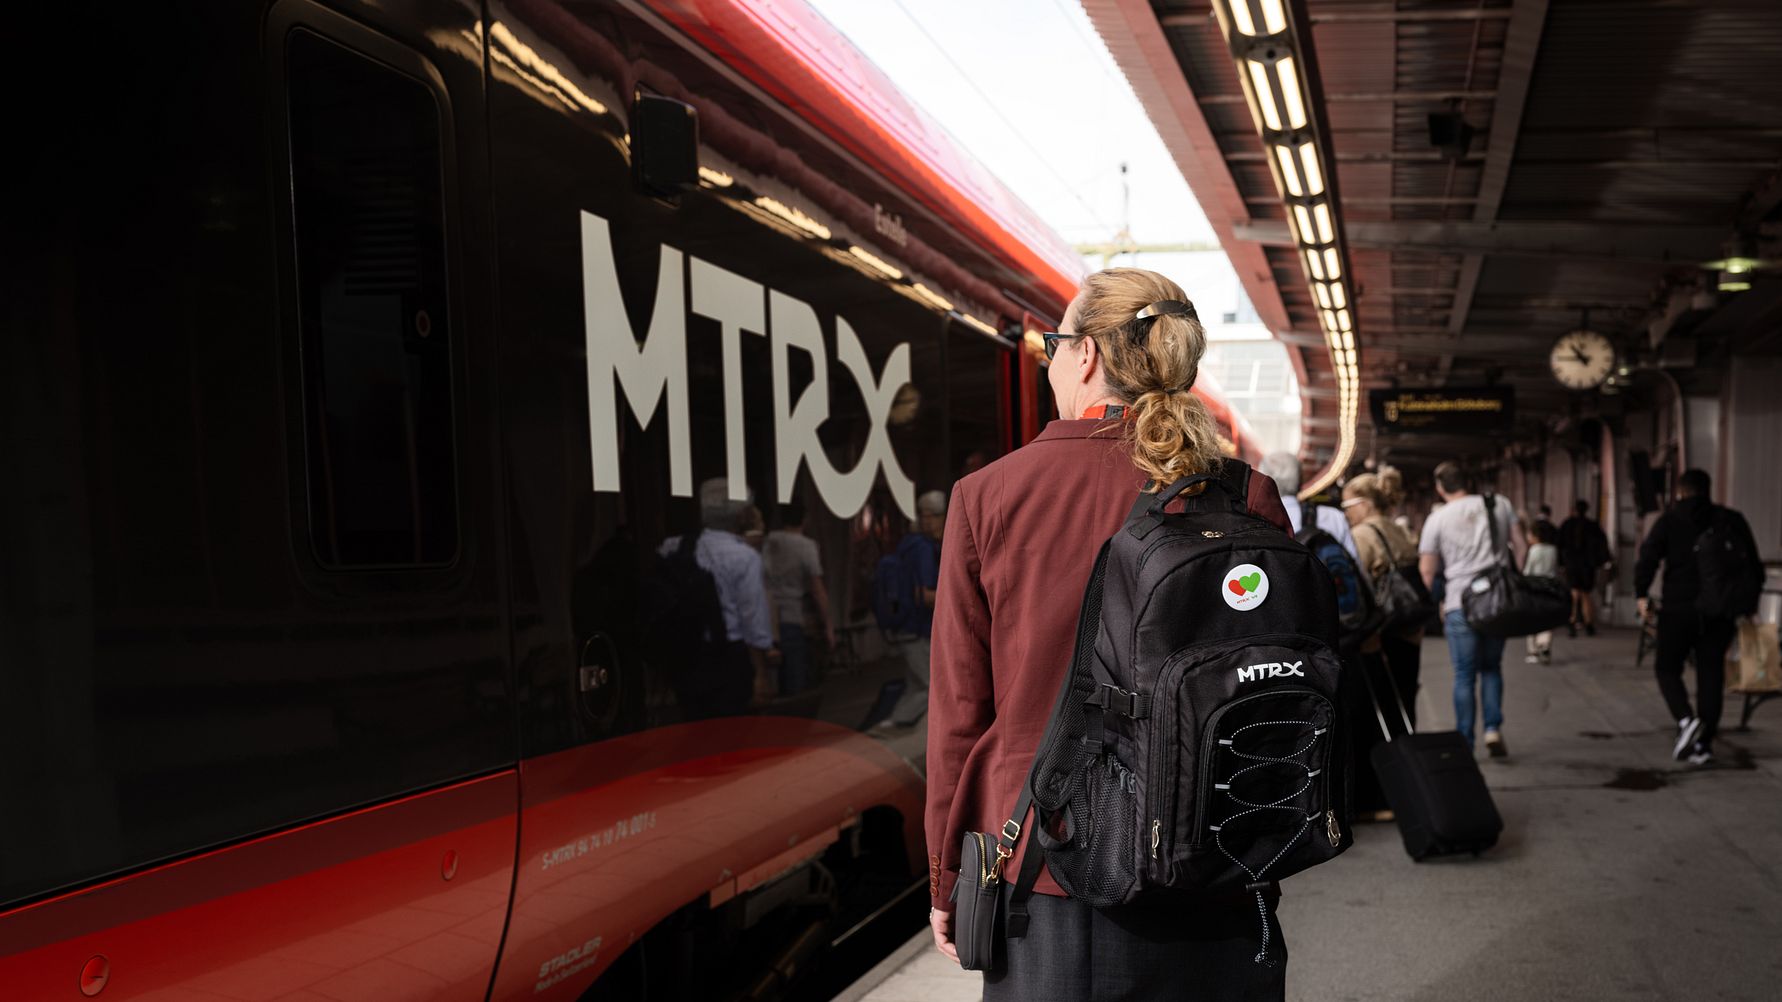 MTRX blir VR – finska VR:s förvärv av tågoperatör i Sverige klart